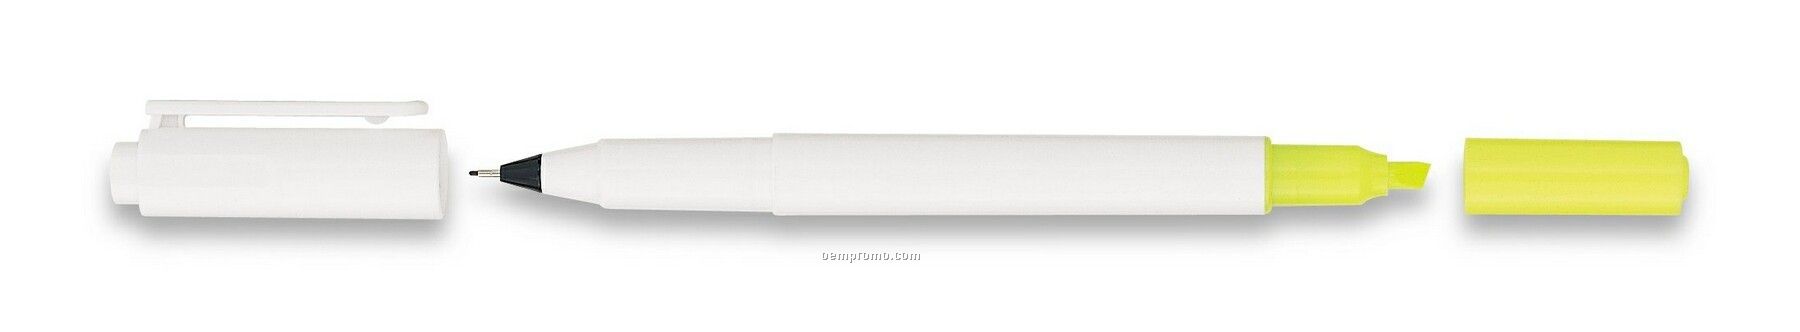 Uni-ball Combi White Ultra Fine Marker / Highlighter